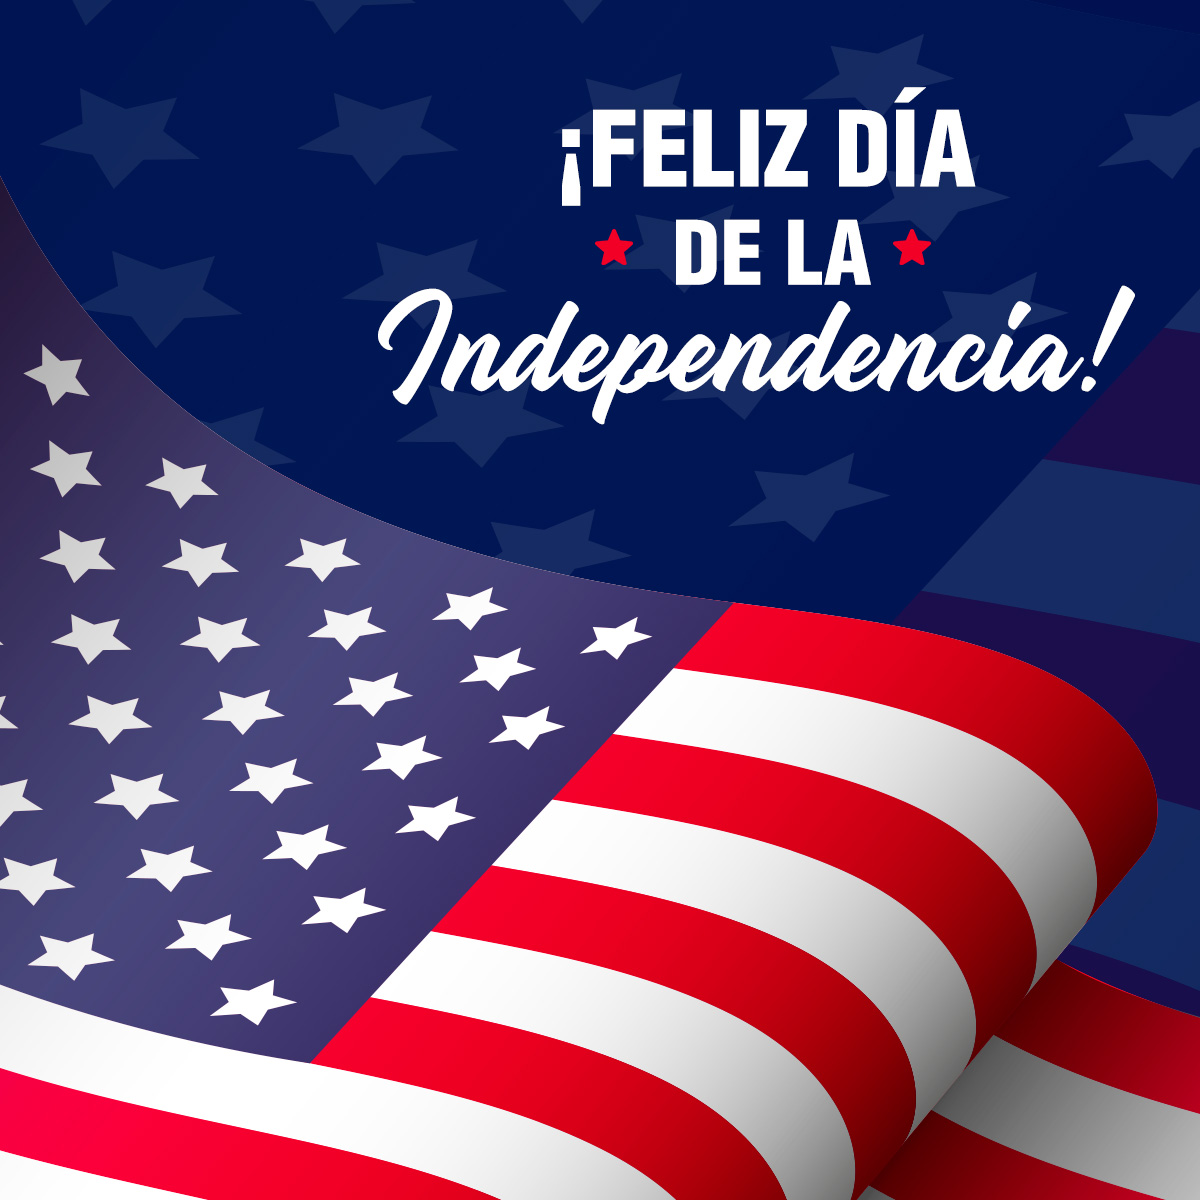 ¡Feliz Día de la Independencia!